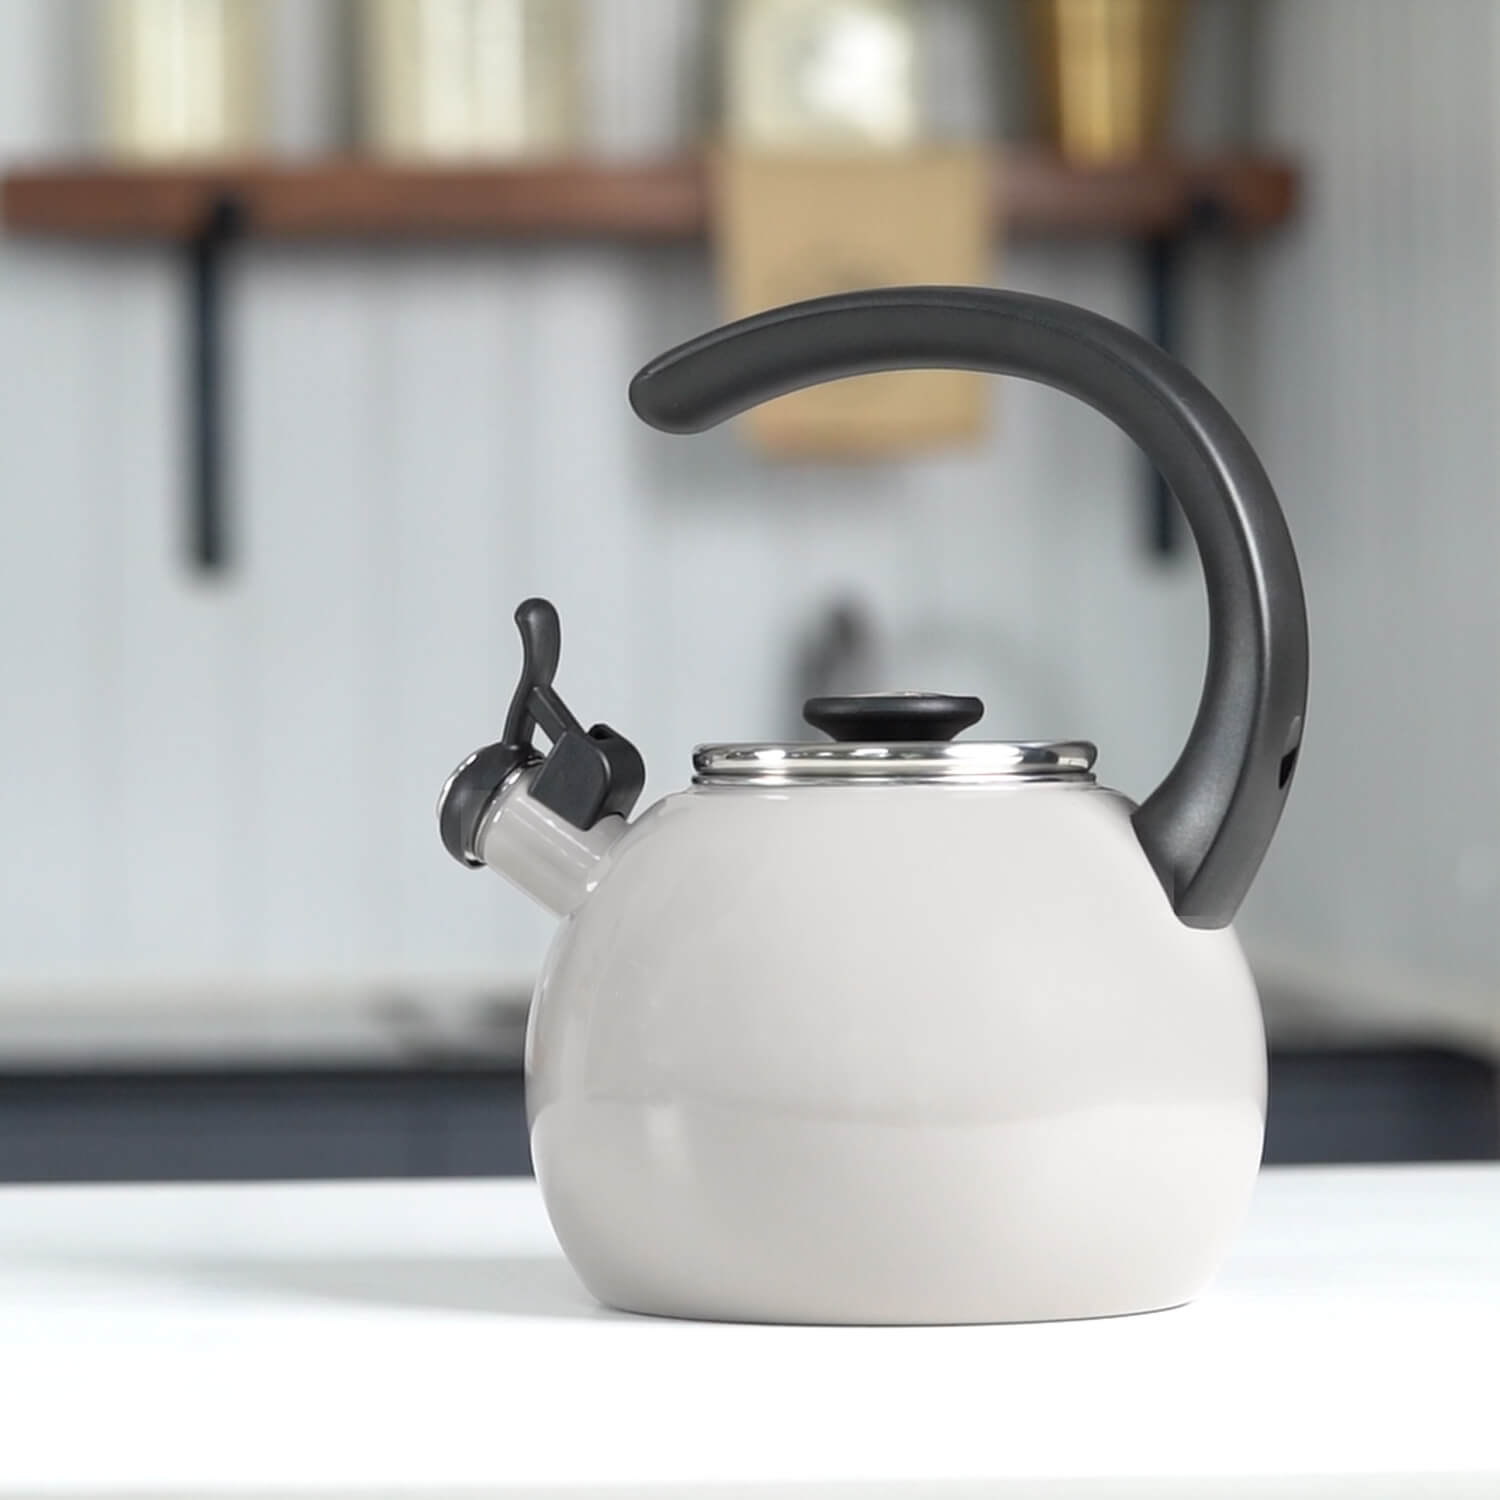 Circulon Tea kettle, 1.9 Litre, Gray